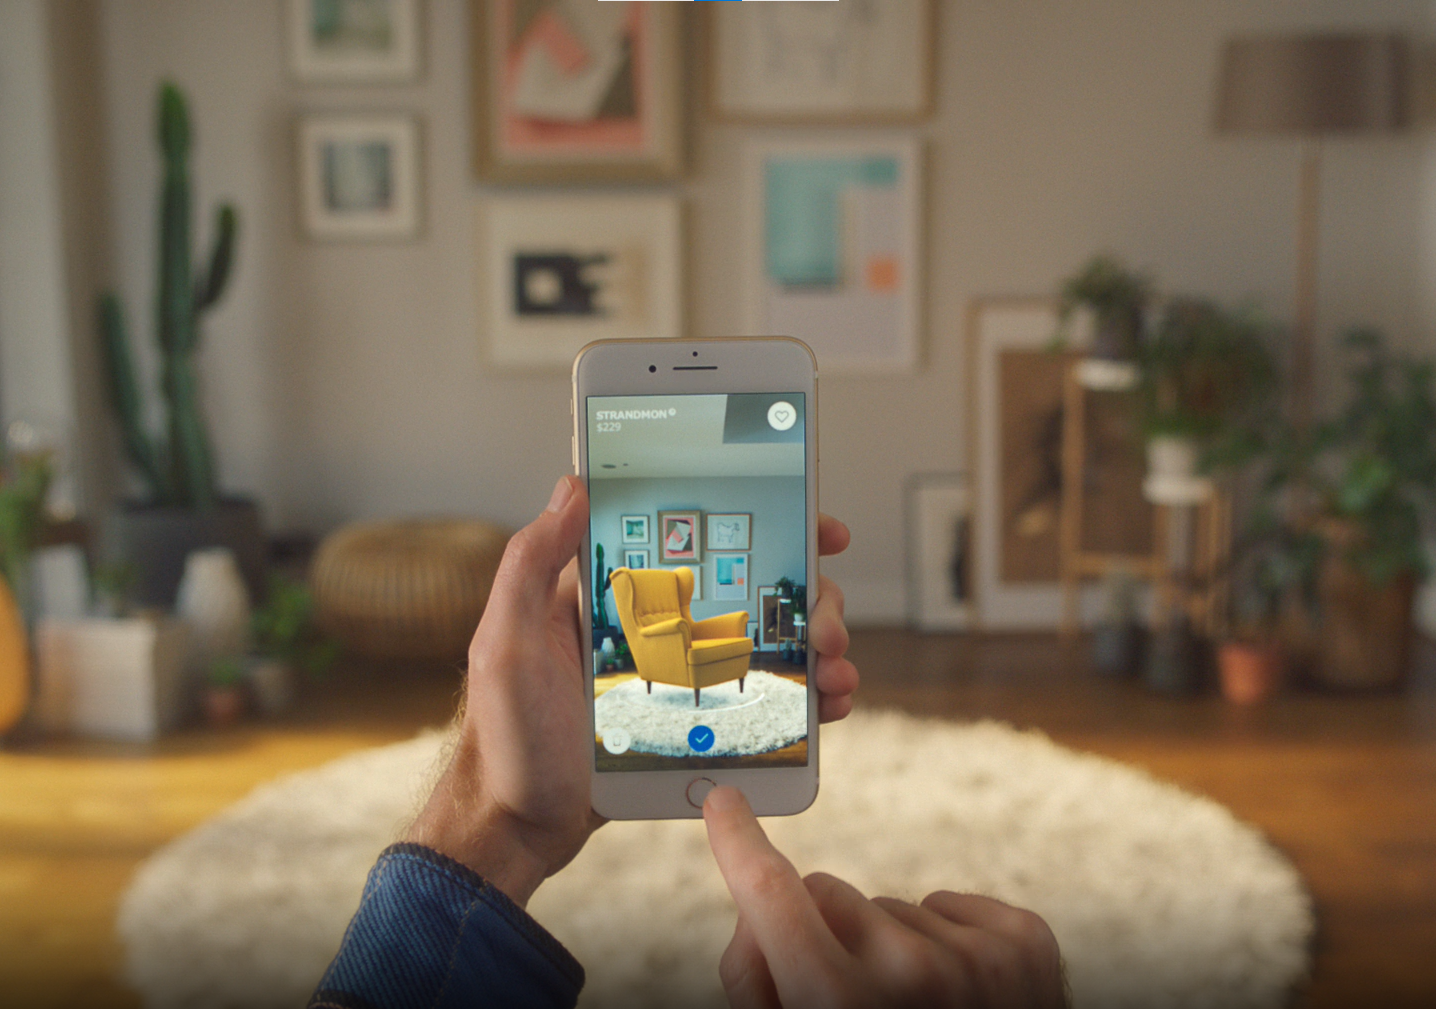 Imagem que mostra uma pessoa segurando um celular em um cômodo da casa. Na tela do celular, há um sofá, em realidade aumentada, que está sendo projetado nesse cômodo.